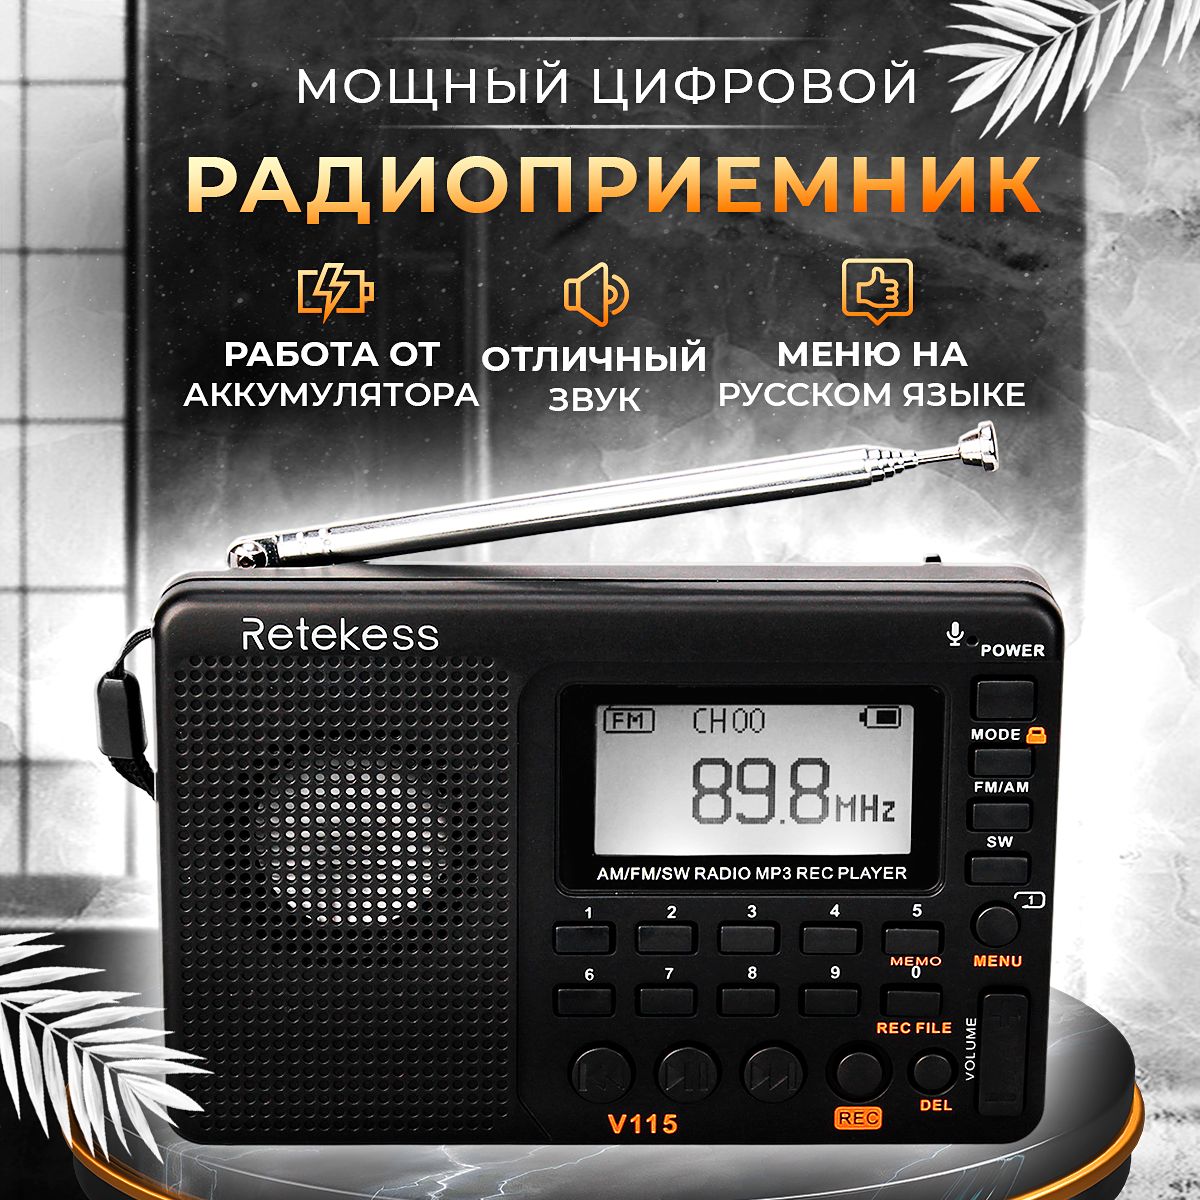 Российские радиоприемники